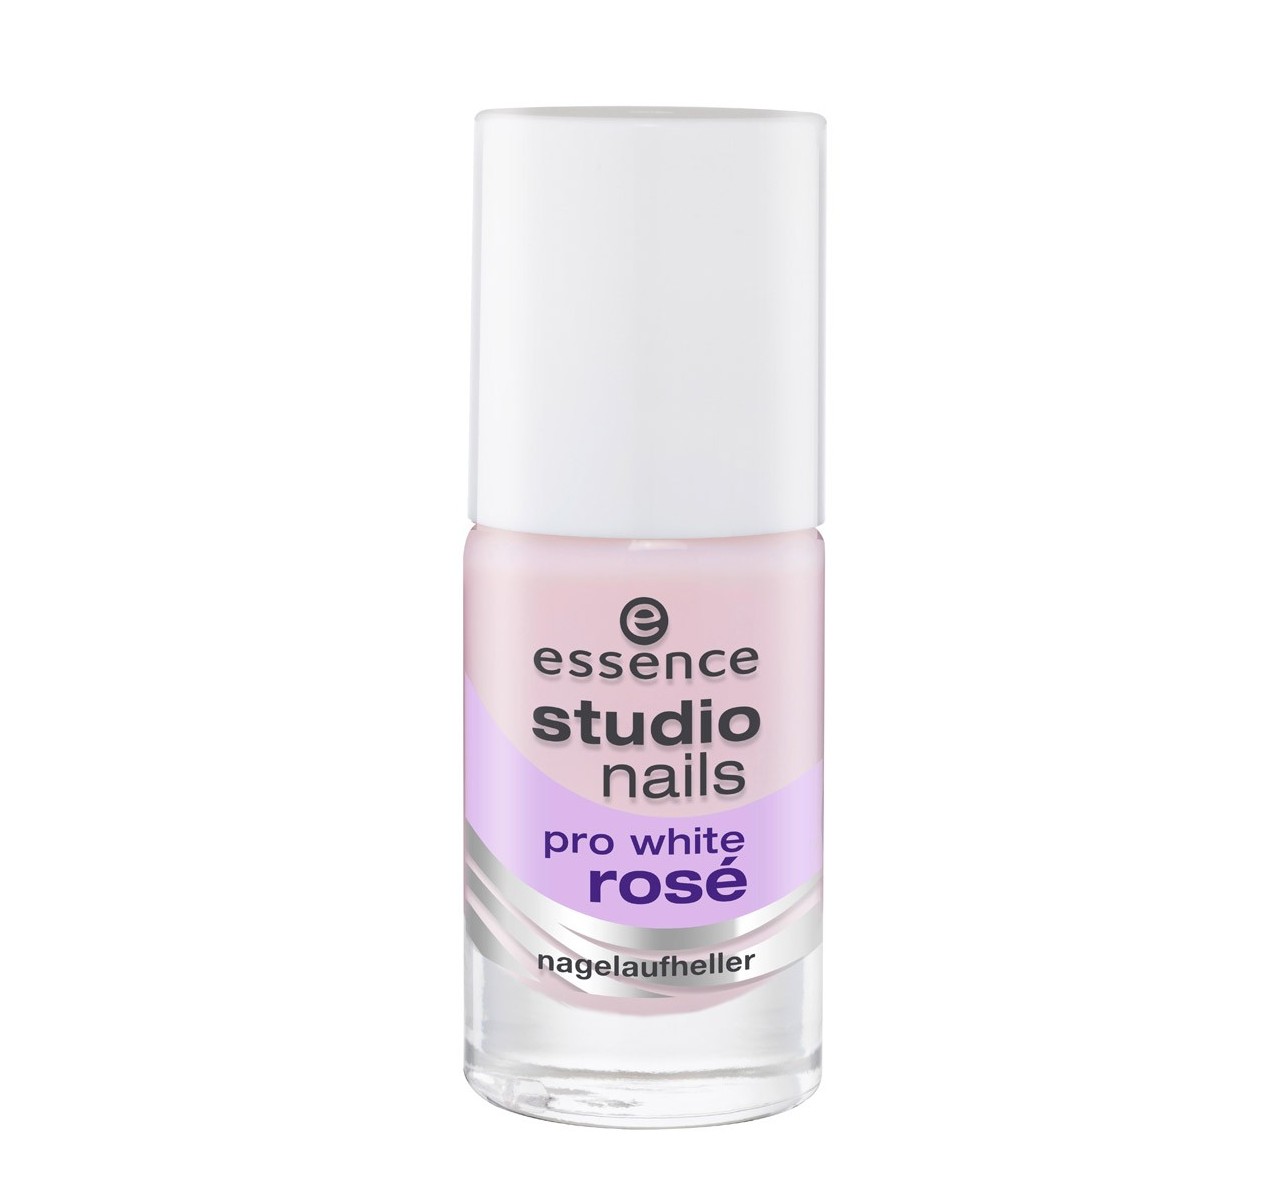 essence studio nails pro white glow